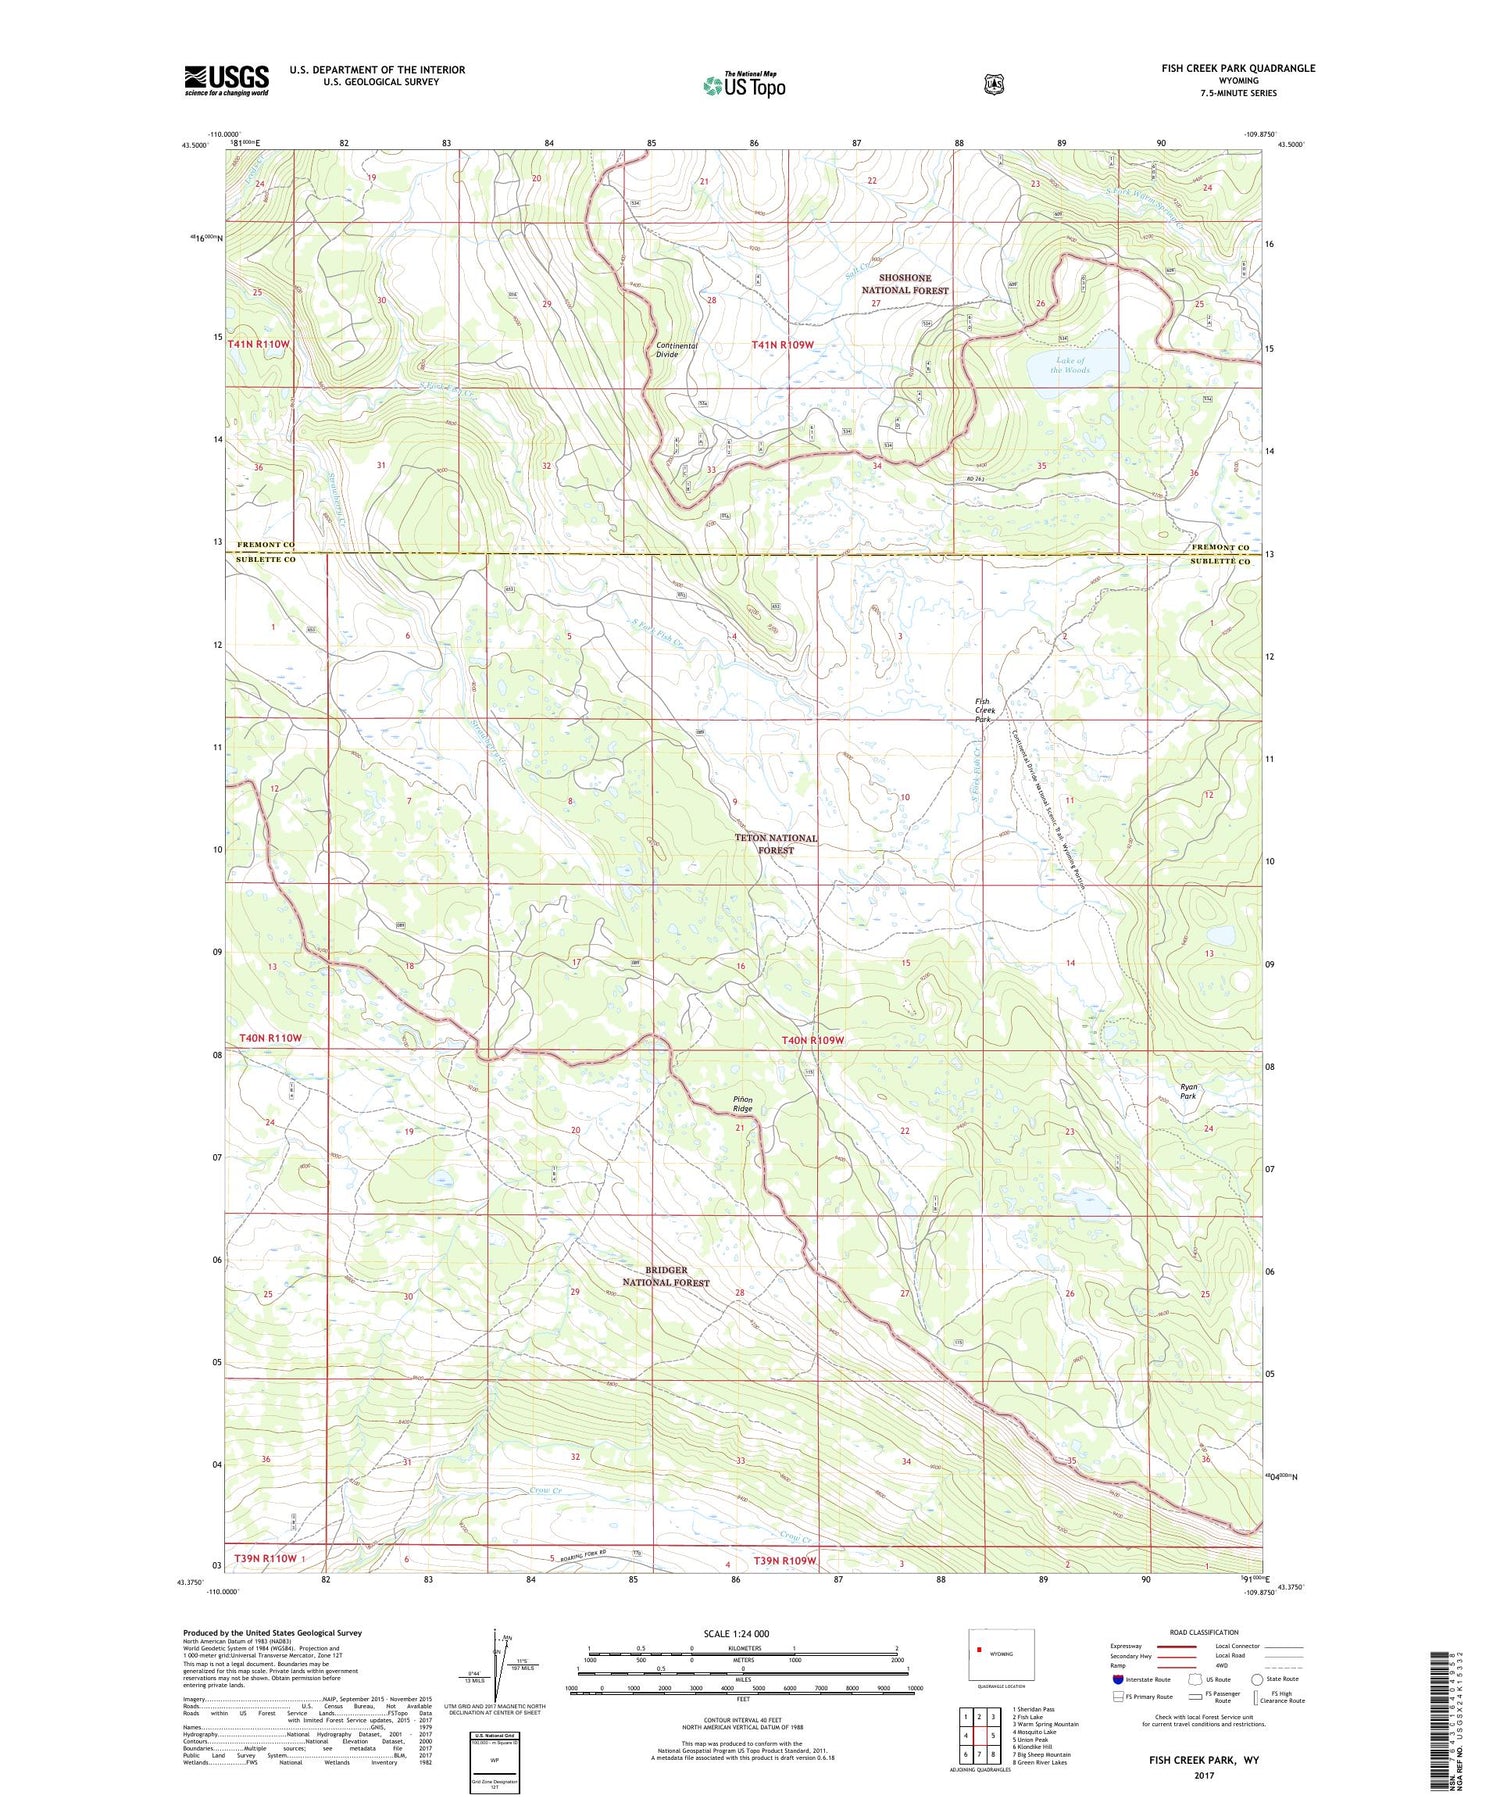 Fish Creek Park Wyoming US Topo Map Image